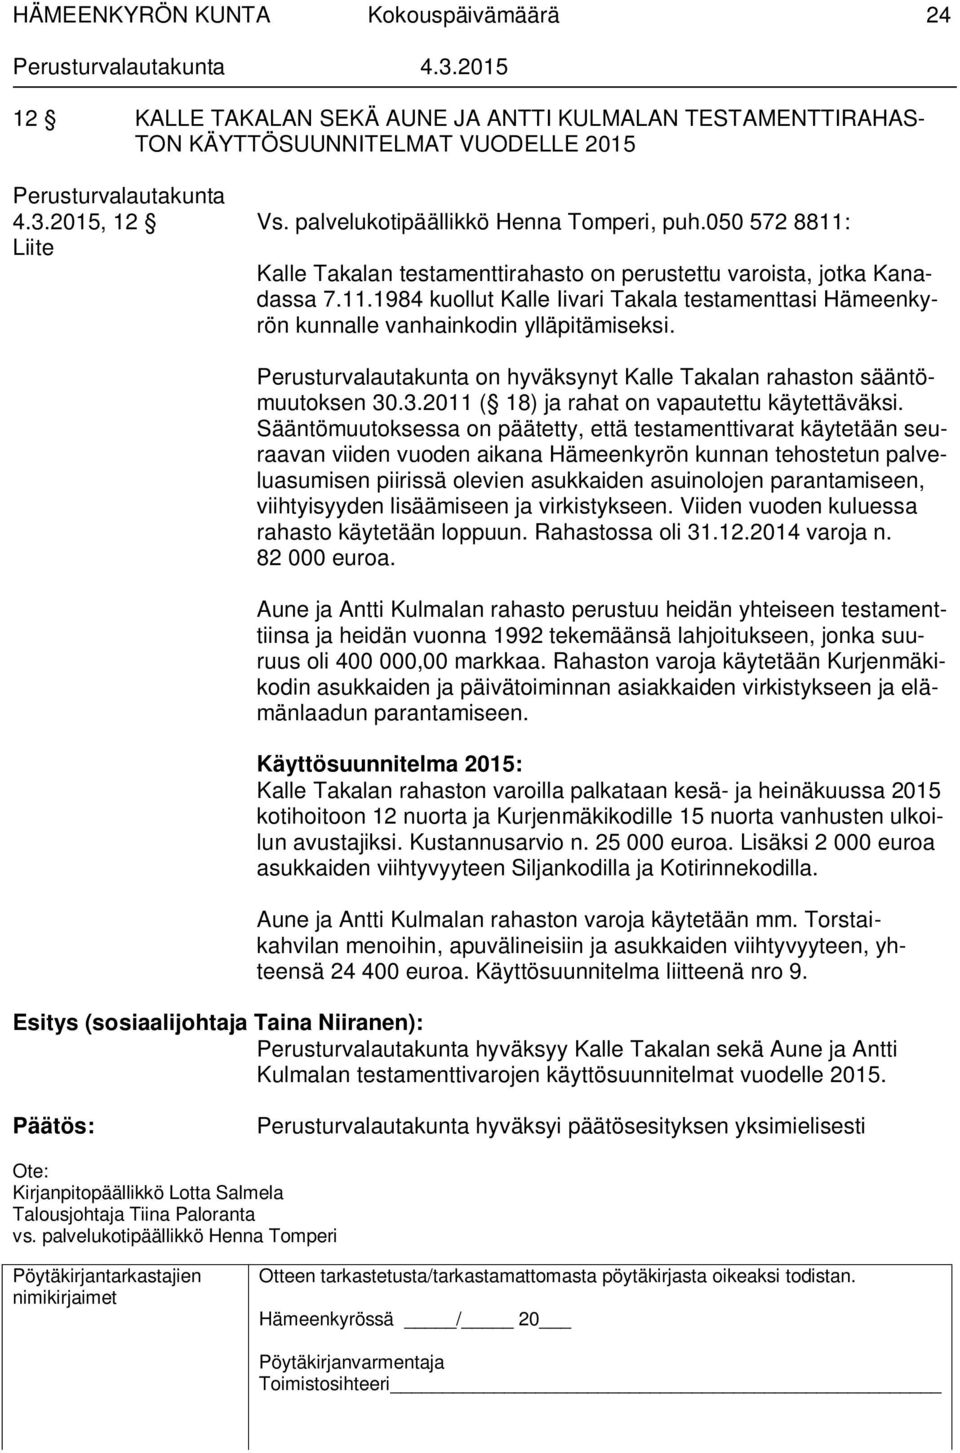 on hyväksynyt Kalle Takalan rahaston sääntömuutoksen 30.3.2011 ( 18) ja rahat on vapautettu käytettäväksi.